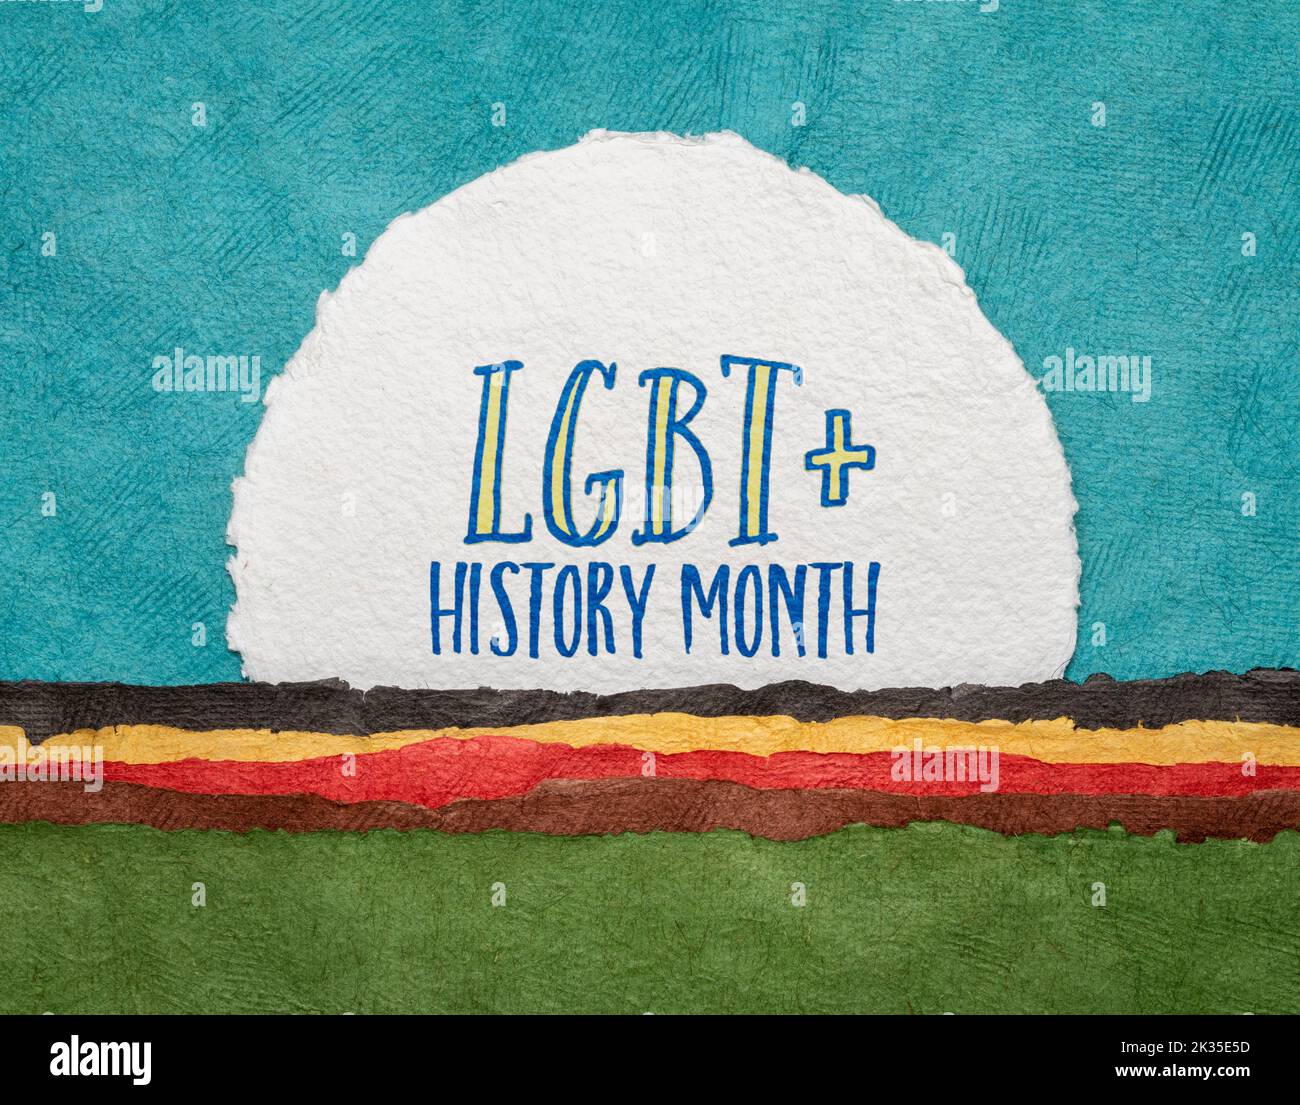 LGBT History Month - Scrittura a mano su carta acquerello fatta a mano contro il paesaggio astratto della carta, promemoria di eventi culturali e del patrimonio Foto Stock